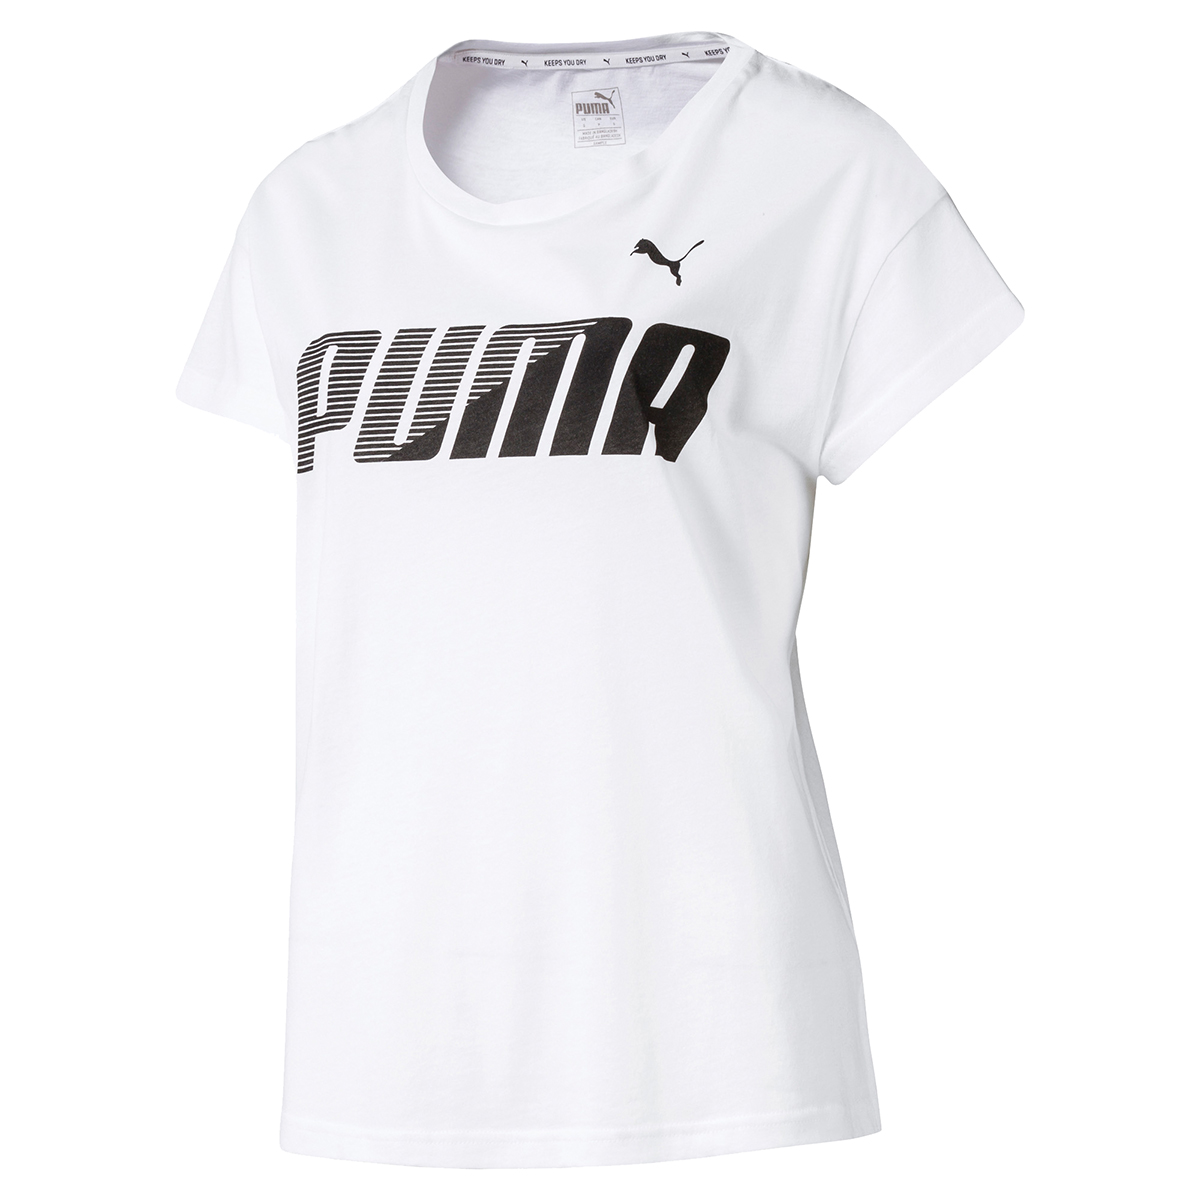 PUMA Damen Modern Sports Graphic Tee DryCell T-Shirt weiss 580075 02